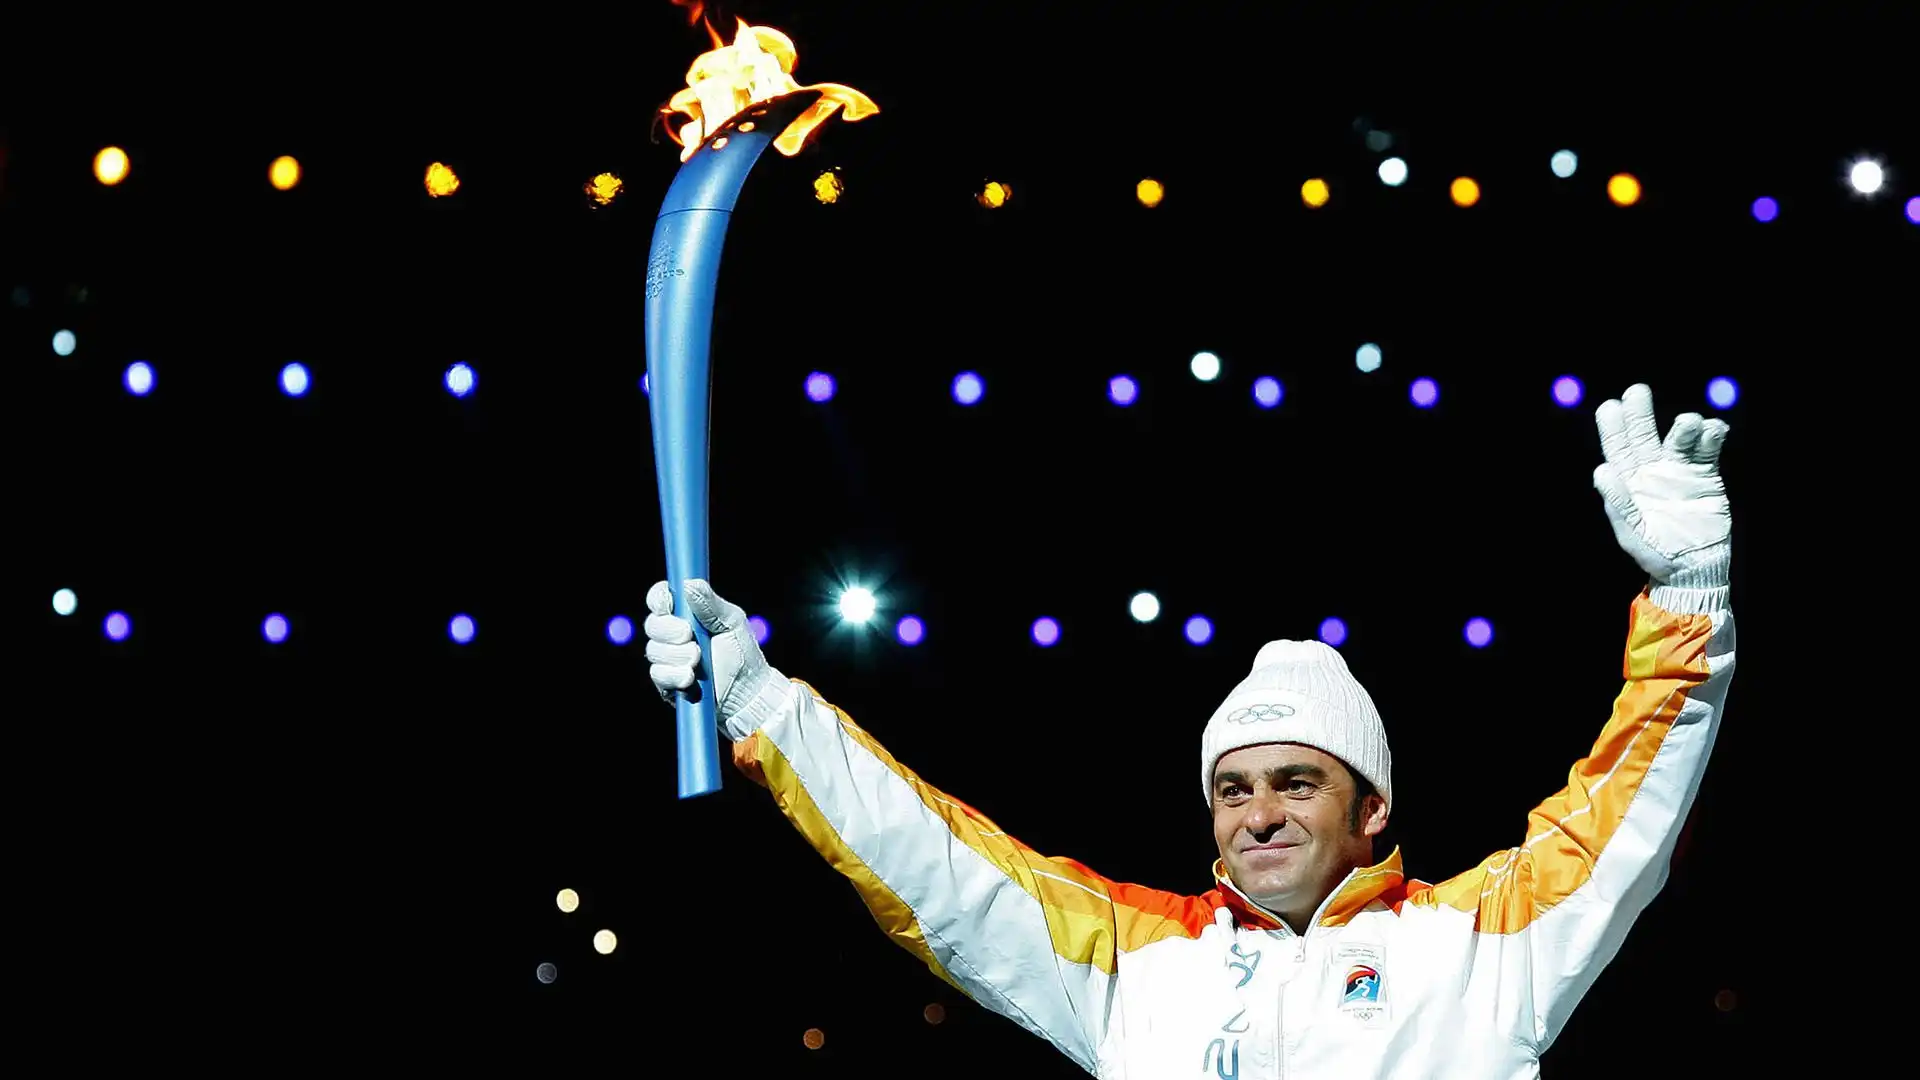 Alberto Tomba ha conquistato tre medaglie d'oro olimpiche nello sci alpino